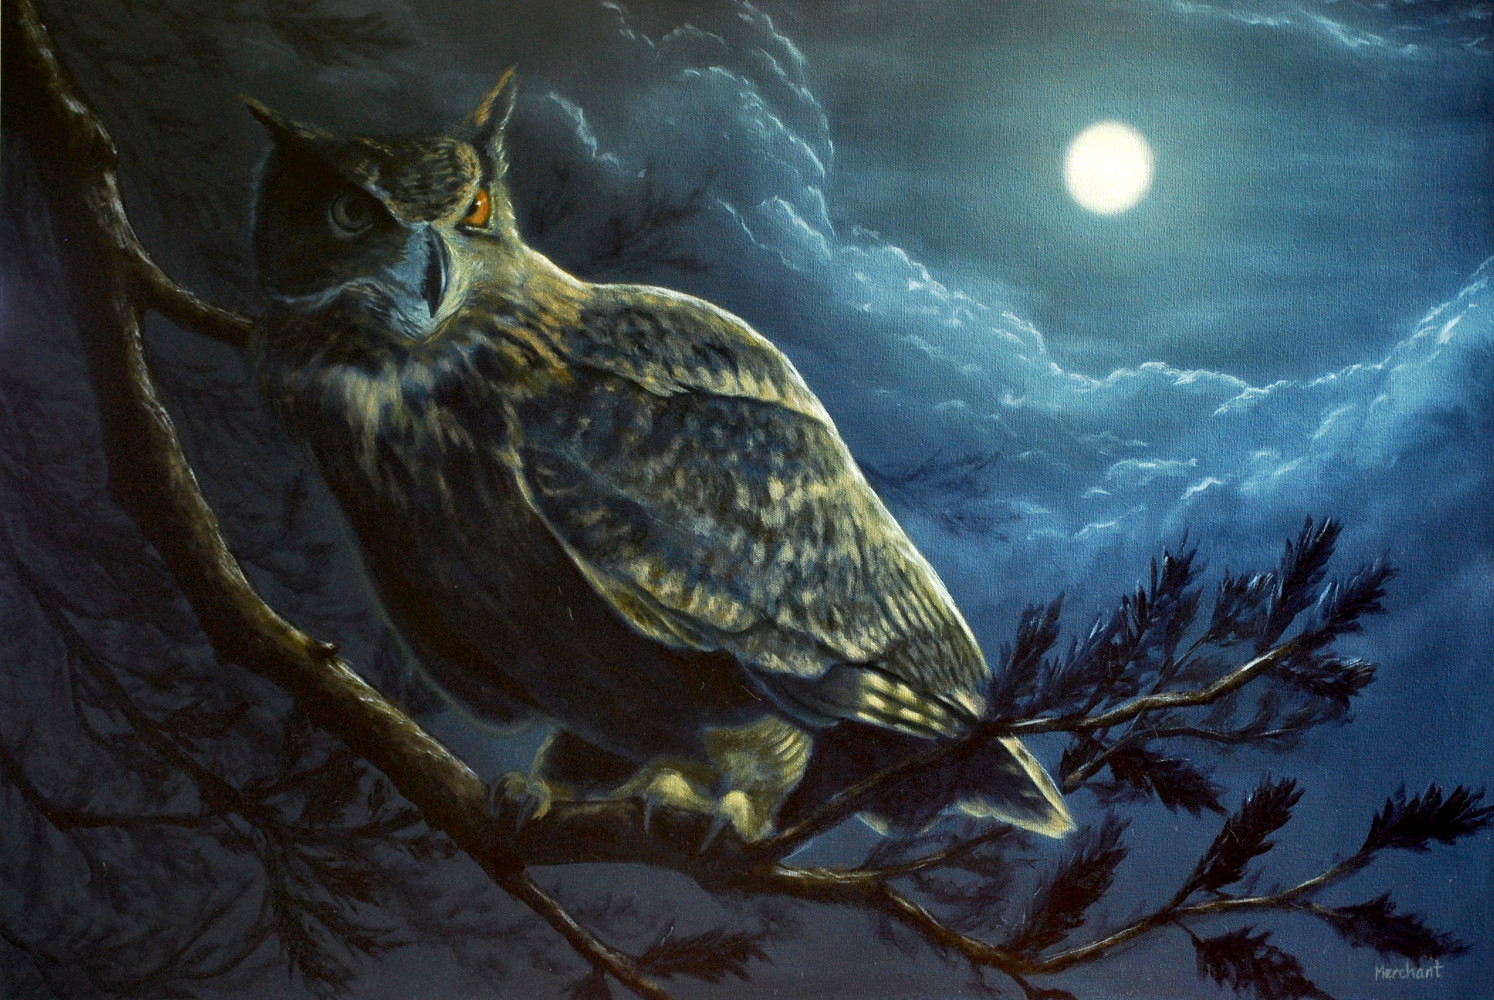 Night Owl, Oil on Canvas, 24x36, 2015.